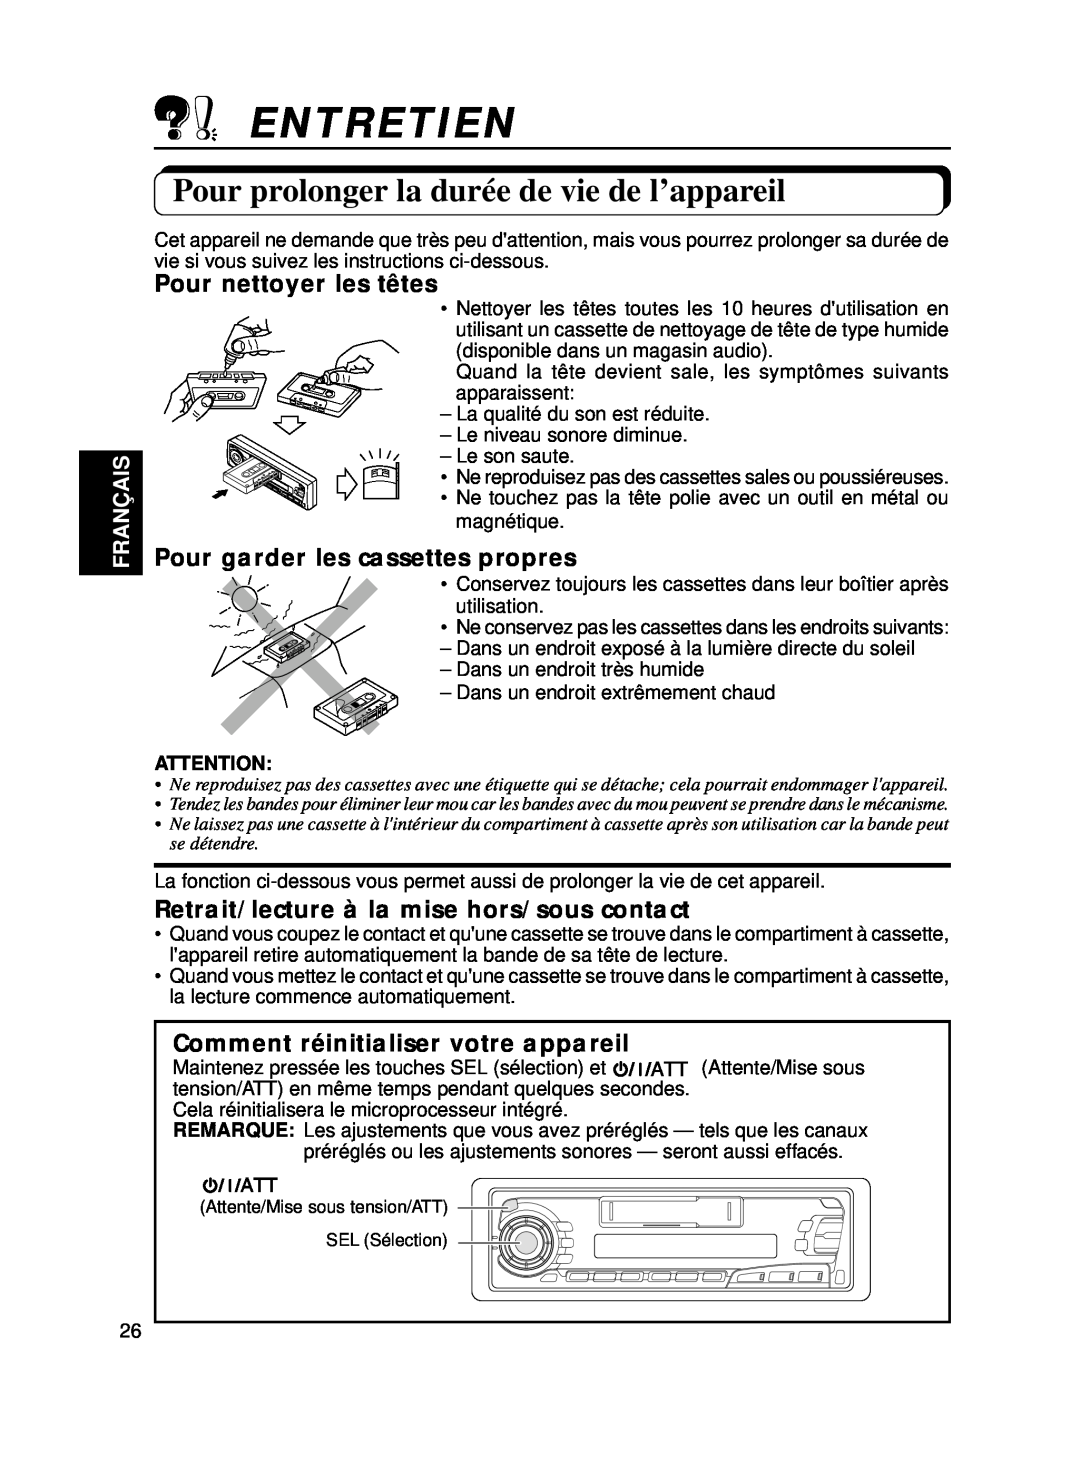 JVC KS-FX250 manual Entretien, Pour prolonger la durée de vie de l’appareil, Pour nettoyer les têtes, Français 